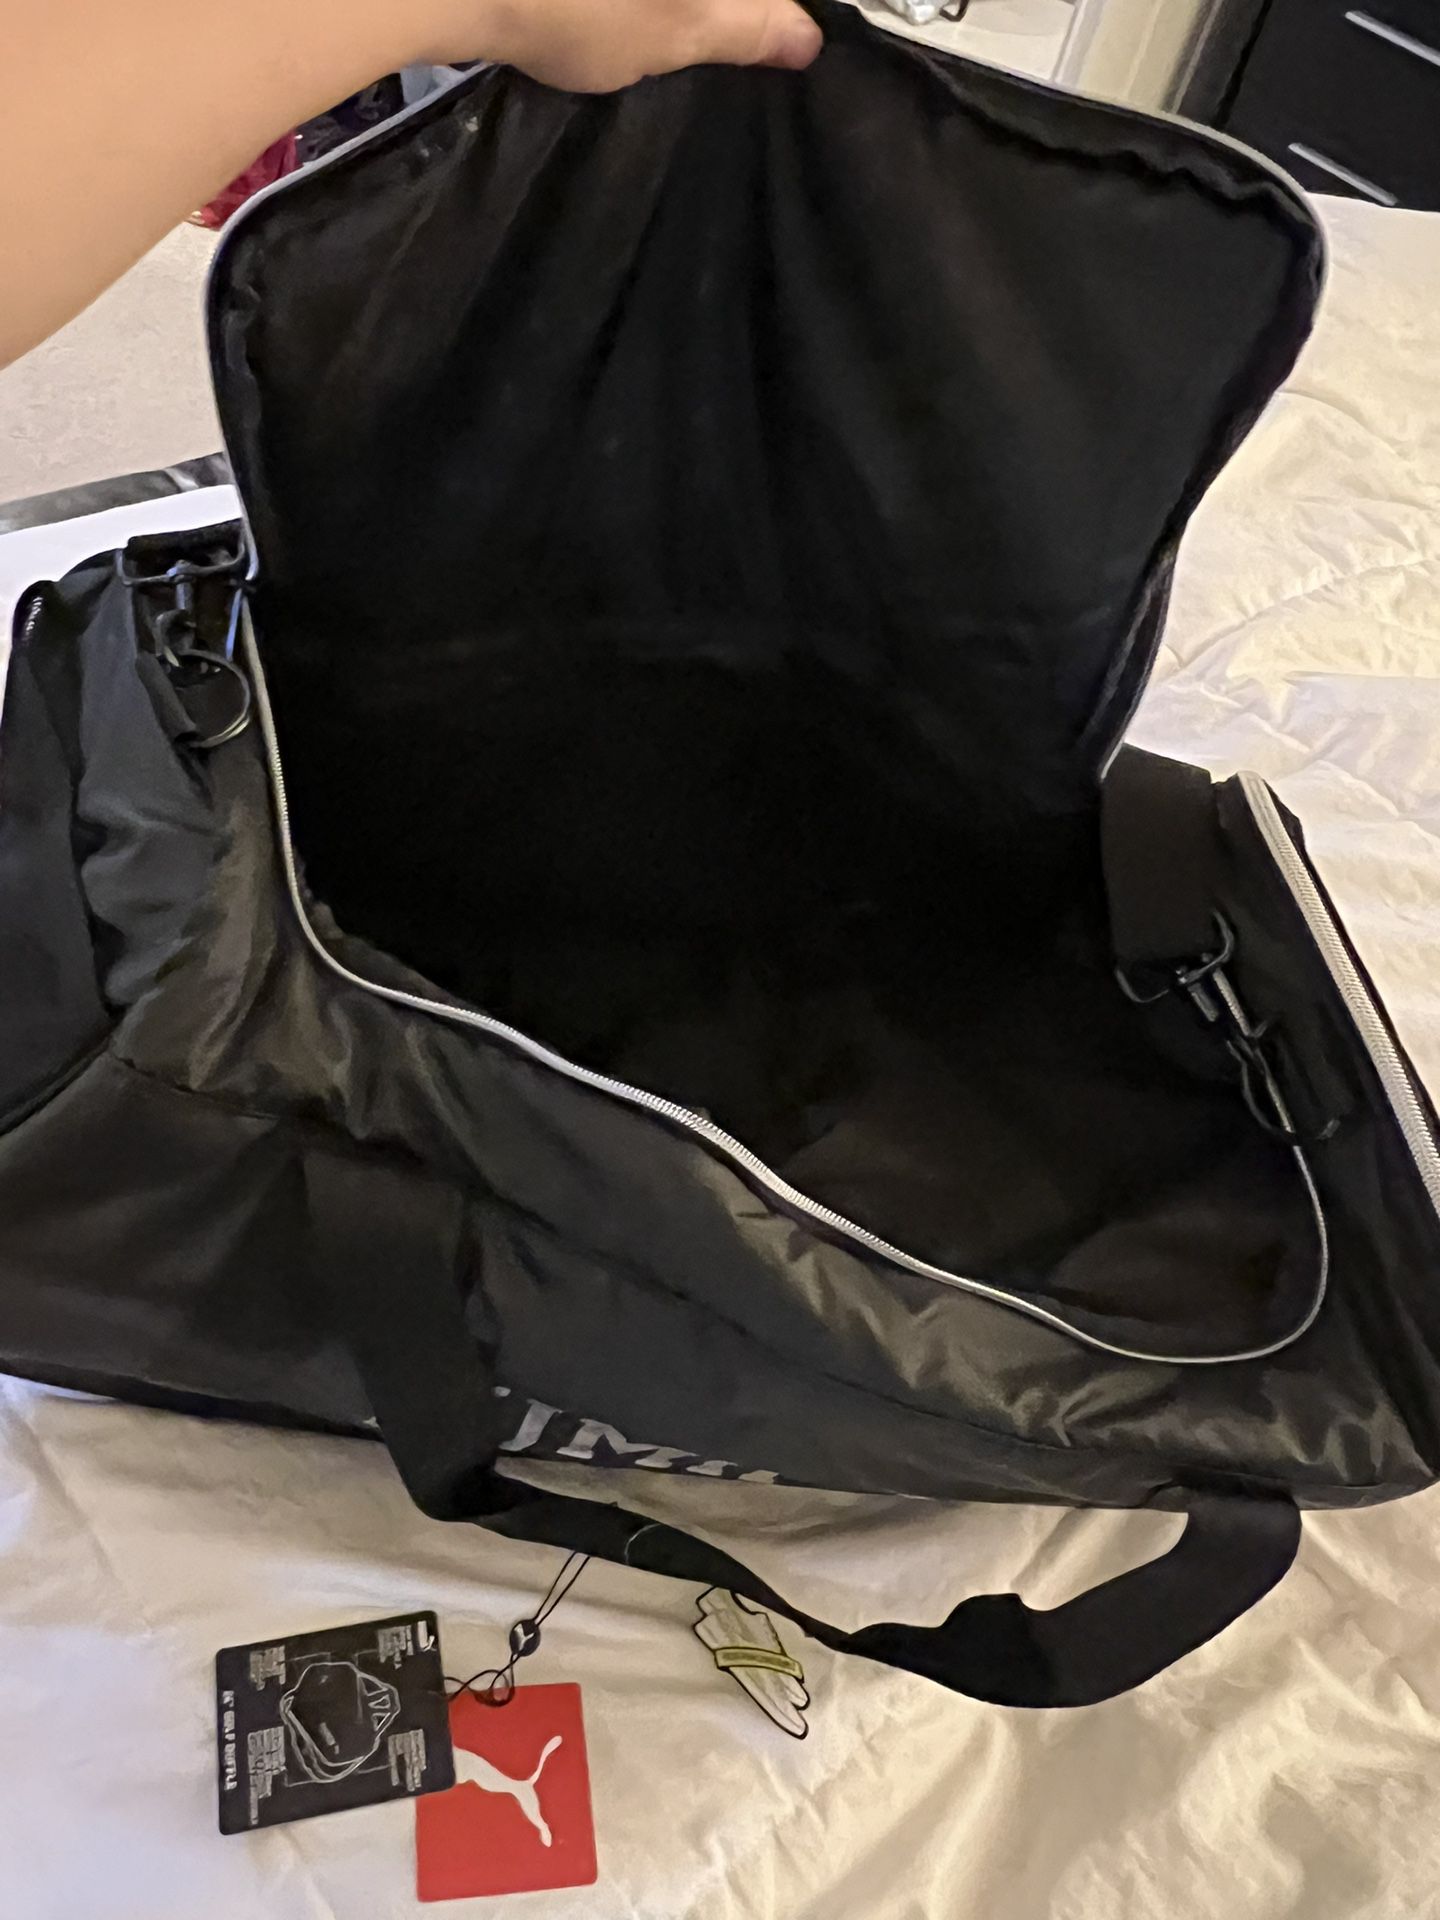 New Puma Duffle Bag